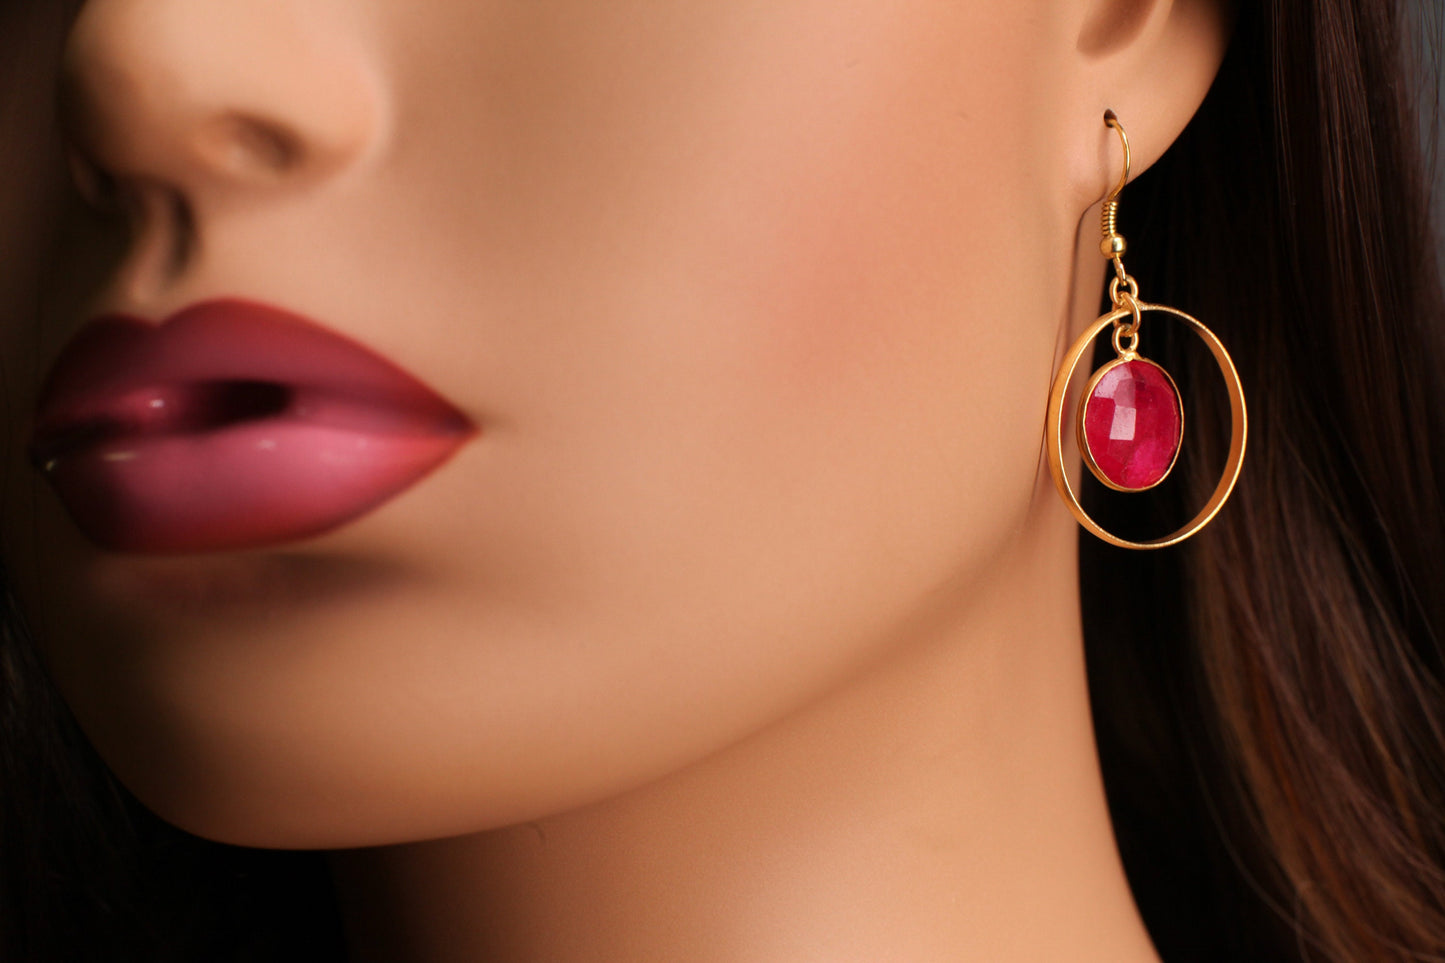 Pink Ruby Bezel 22K Gold Vermeil Circle Hoop Earrings, Minimalist, Boho